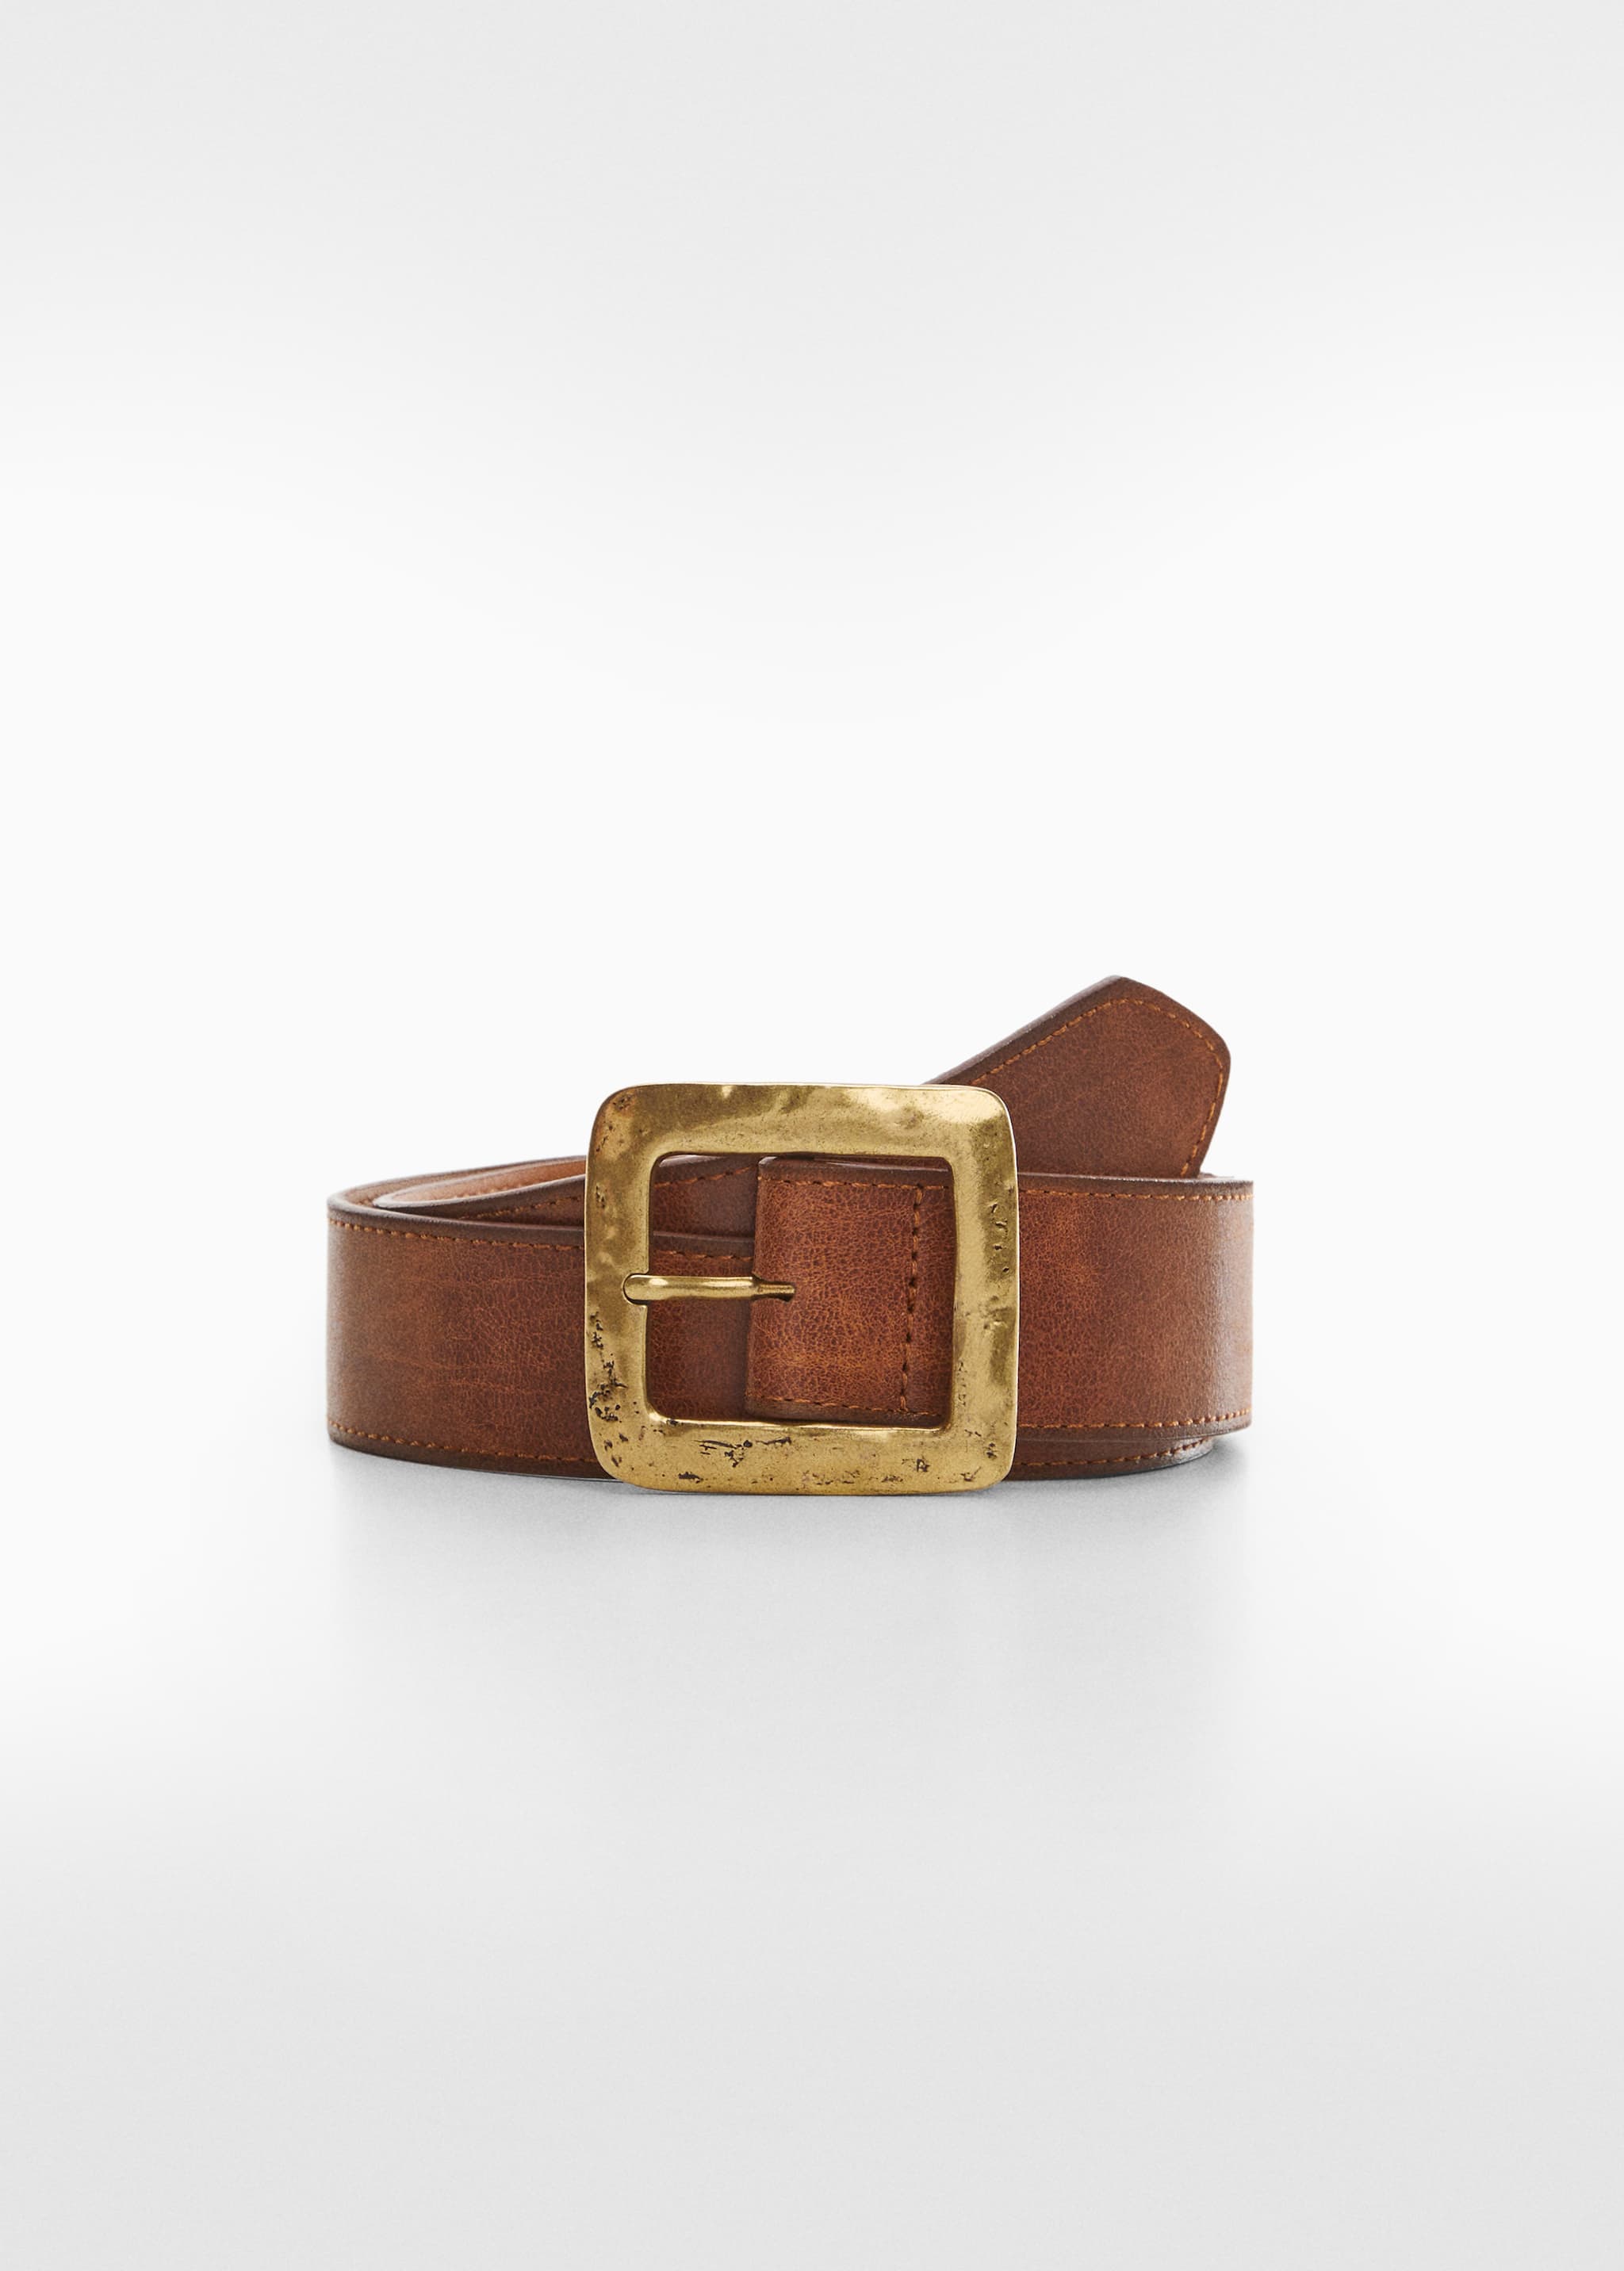 Cinturón hebilla cuadrada textura - Artículo sin modelo